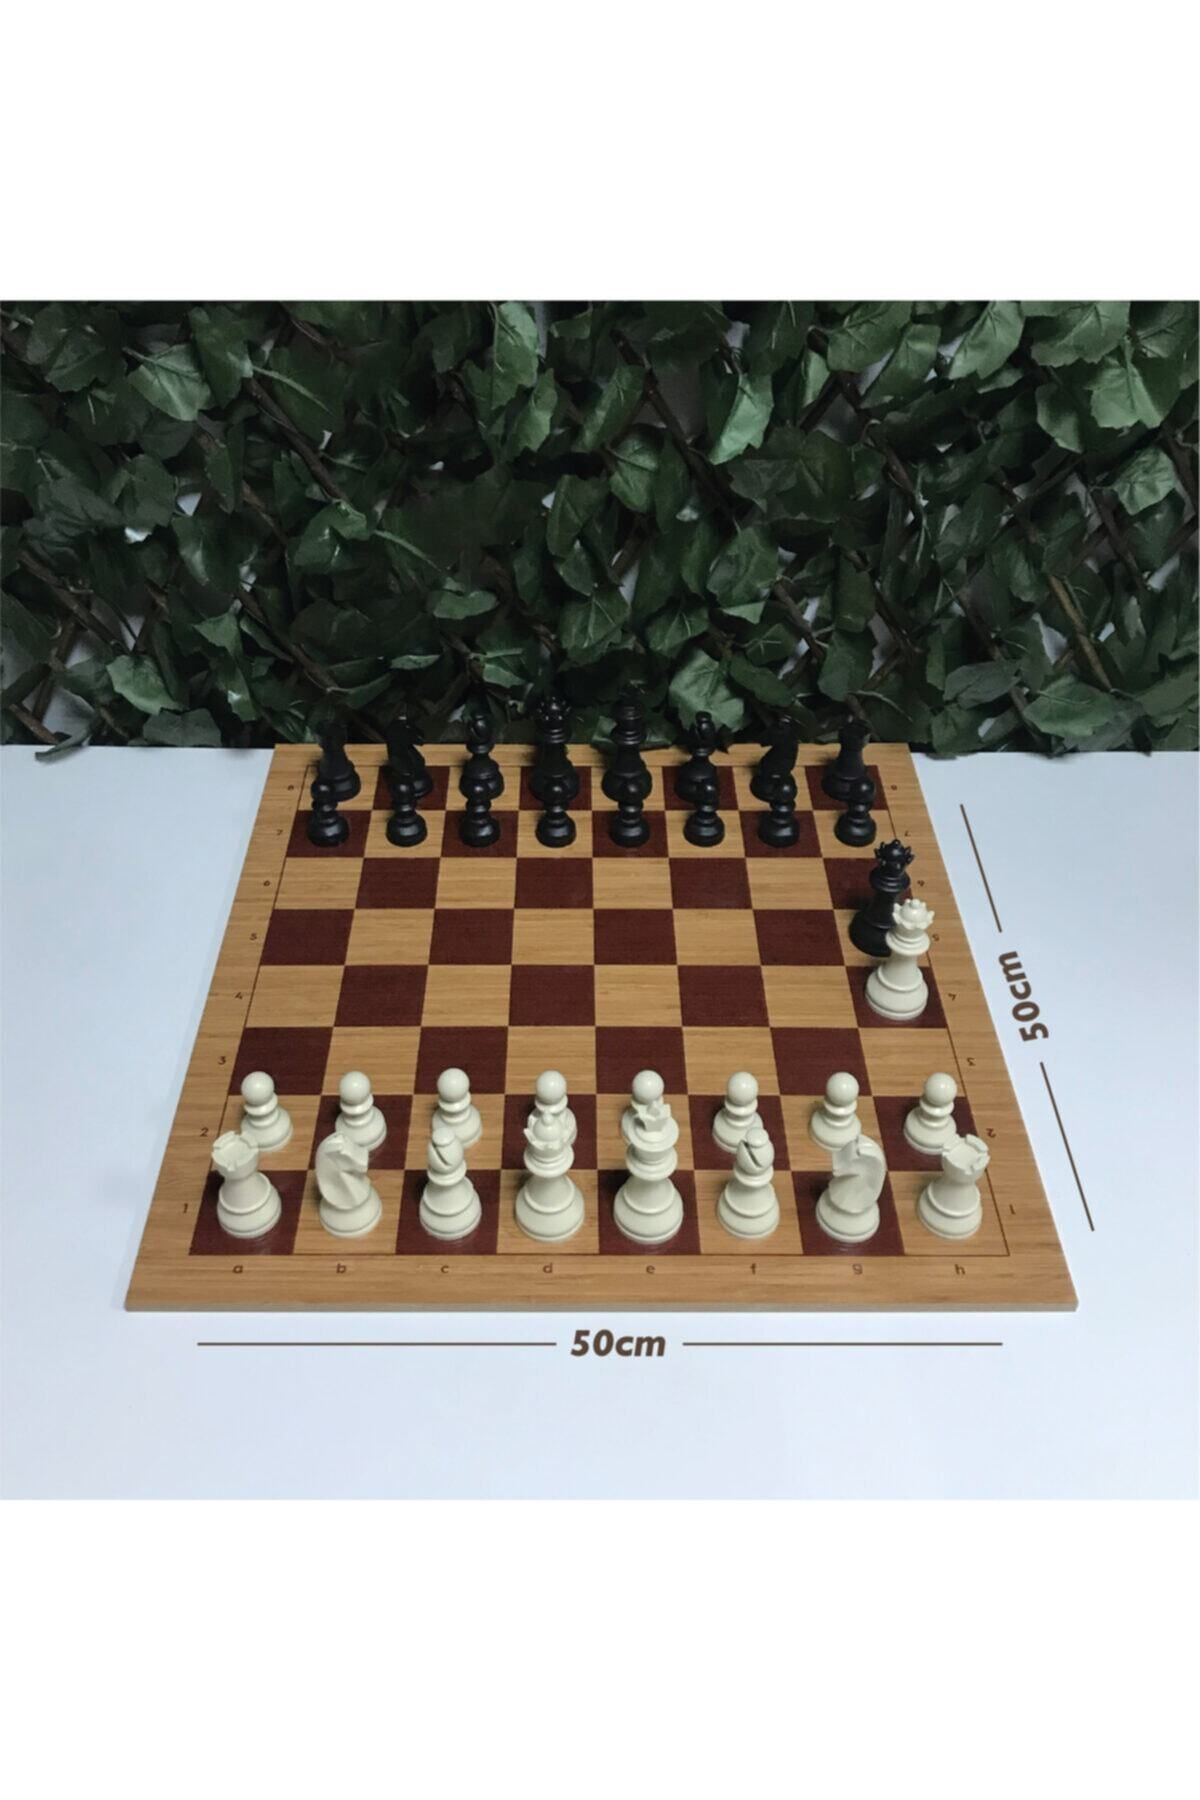 Yeni Satranç Profesyonel Satranç Taşları (95mm) - Mdf Zemin